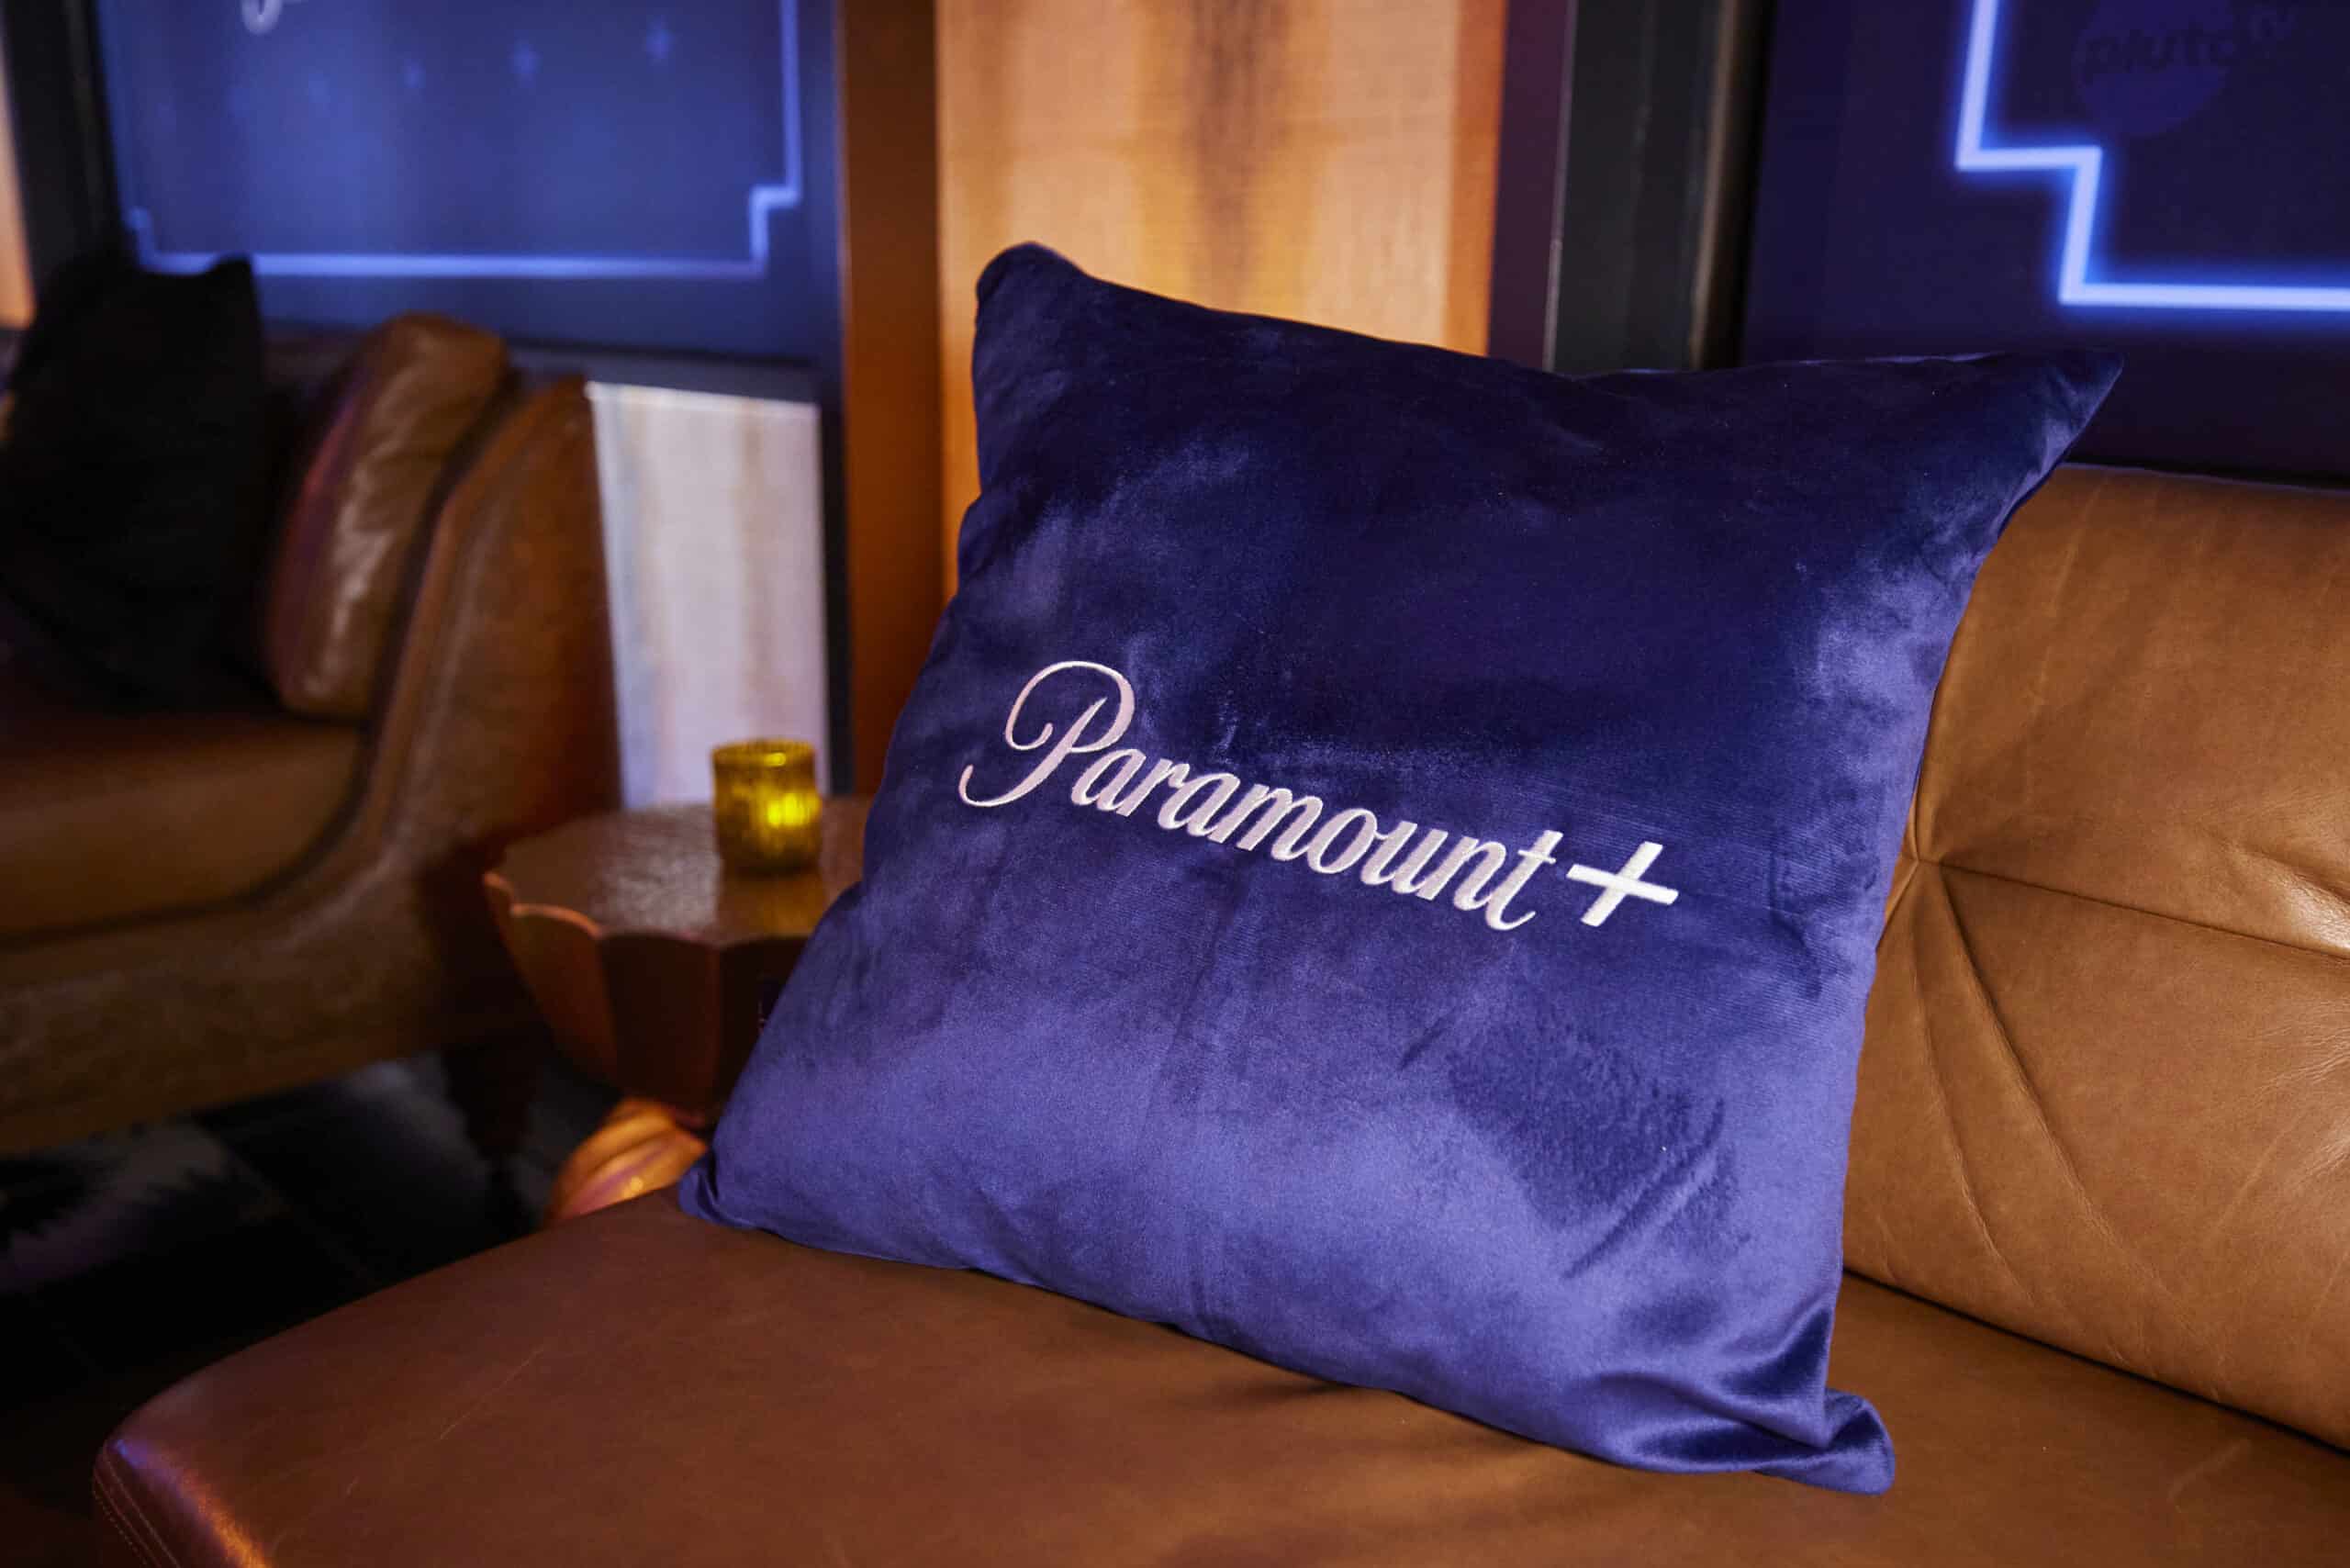 Paramount+ logo pillow